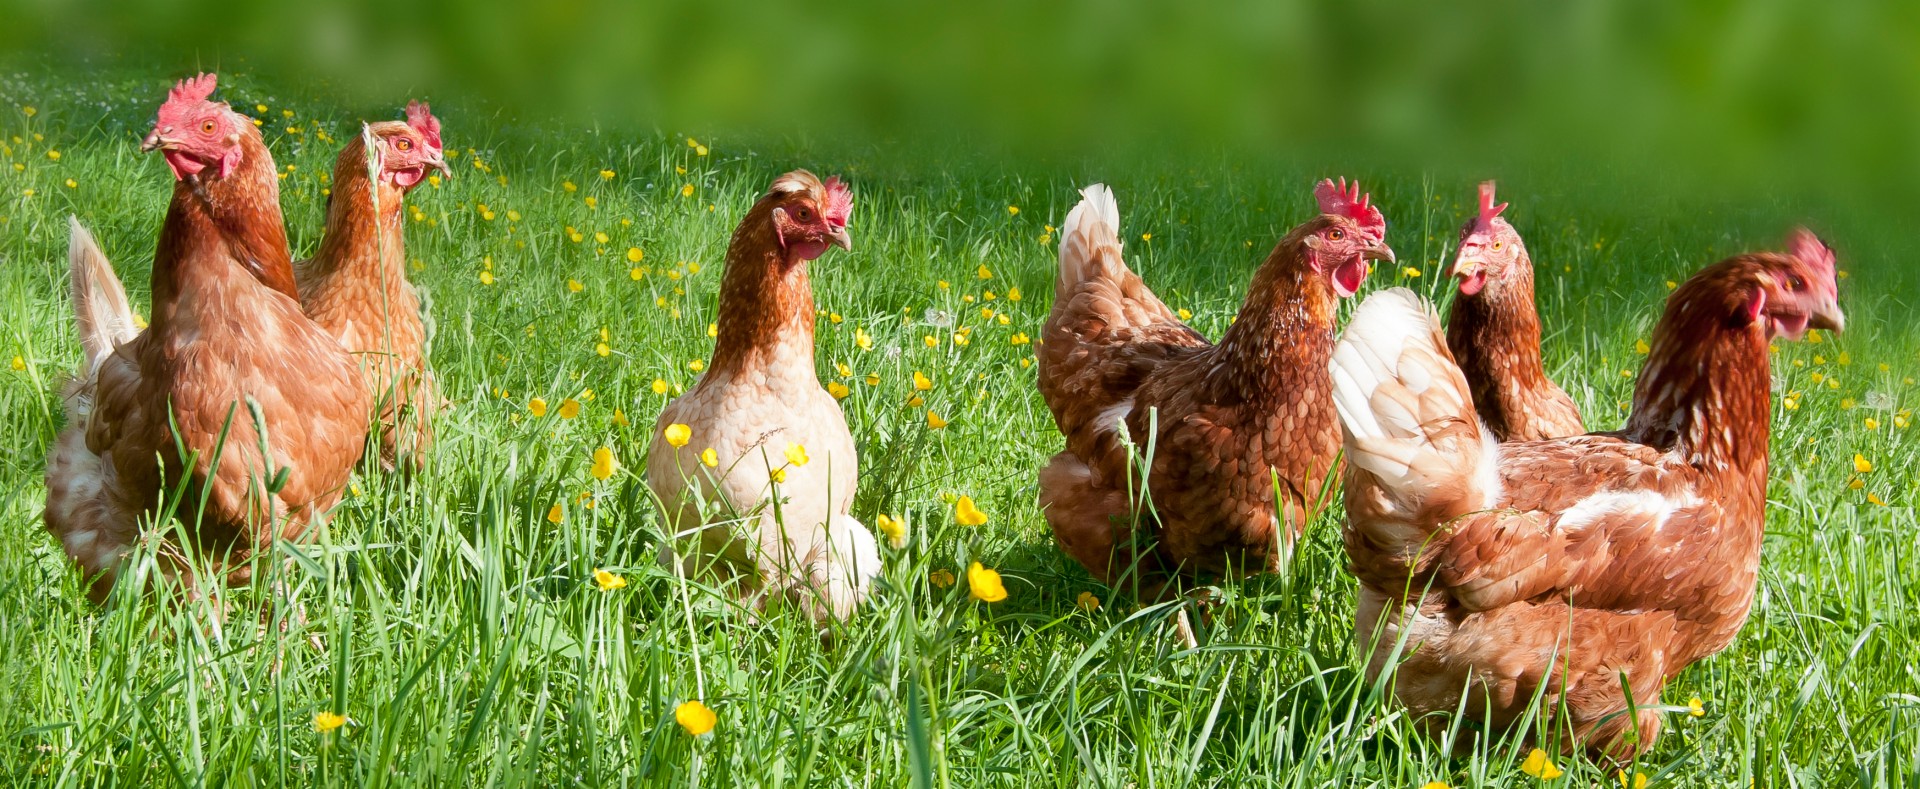 Free range chicken on an organic farm in Austria; Freilandhühner auf einem Bauernhof in Oberösterreich